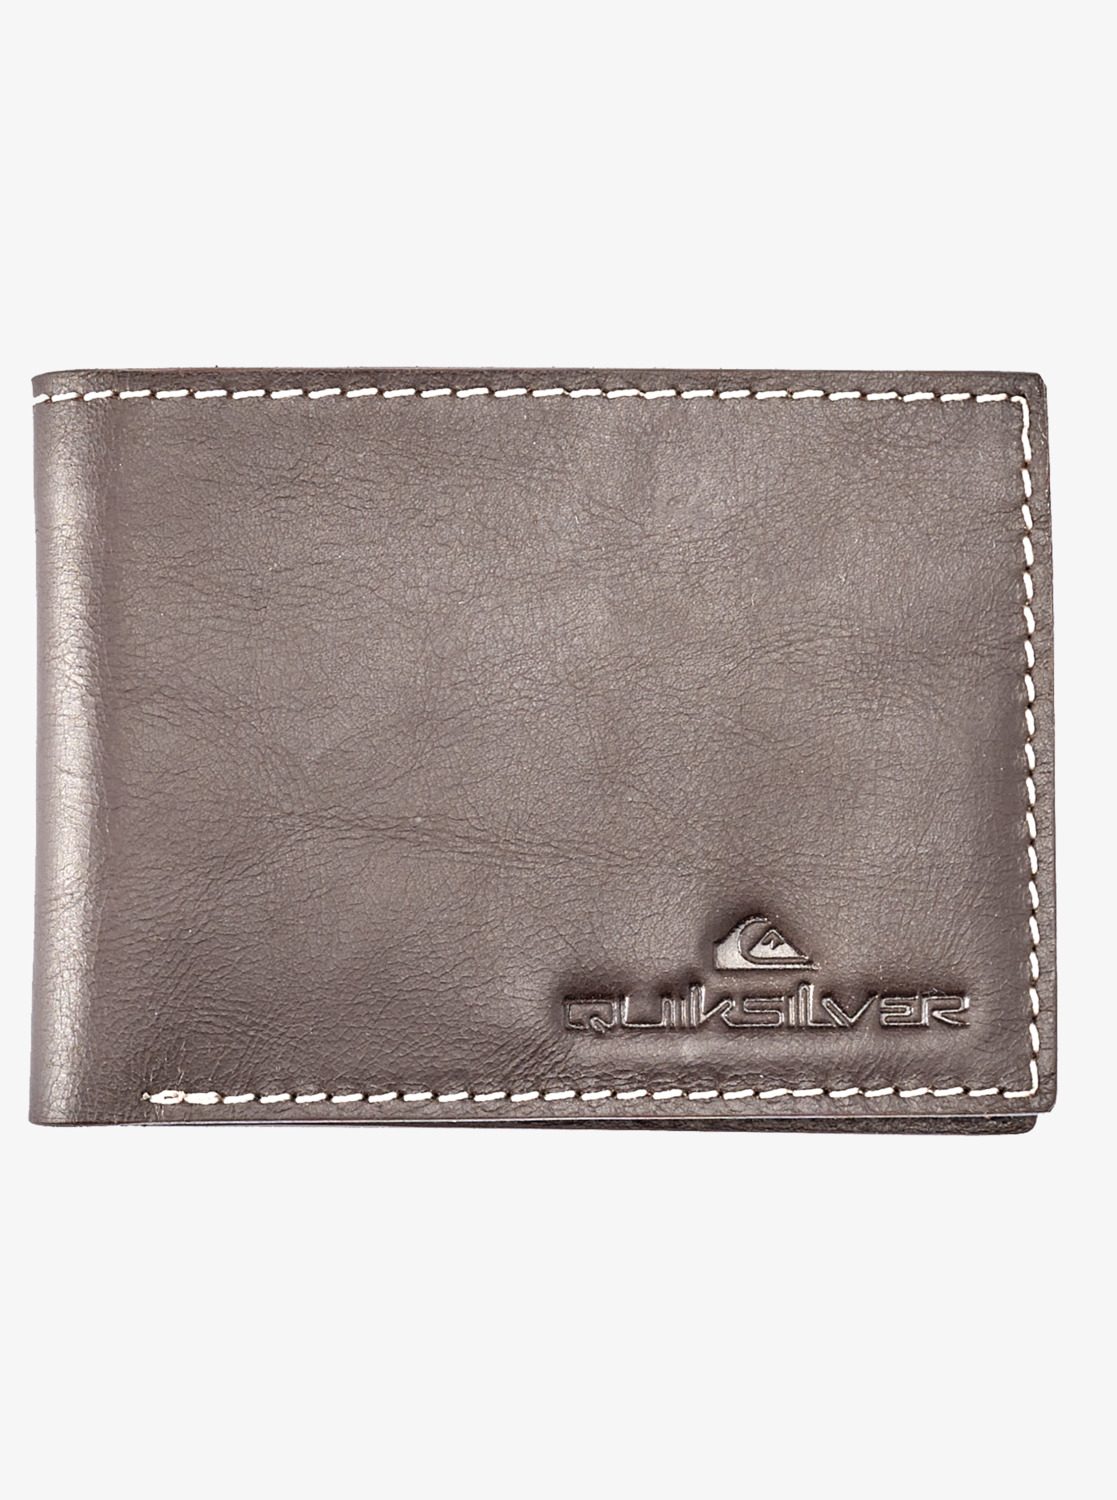 Men's wallet Quiksilver